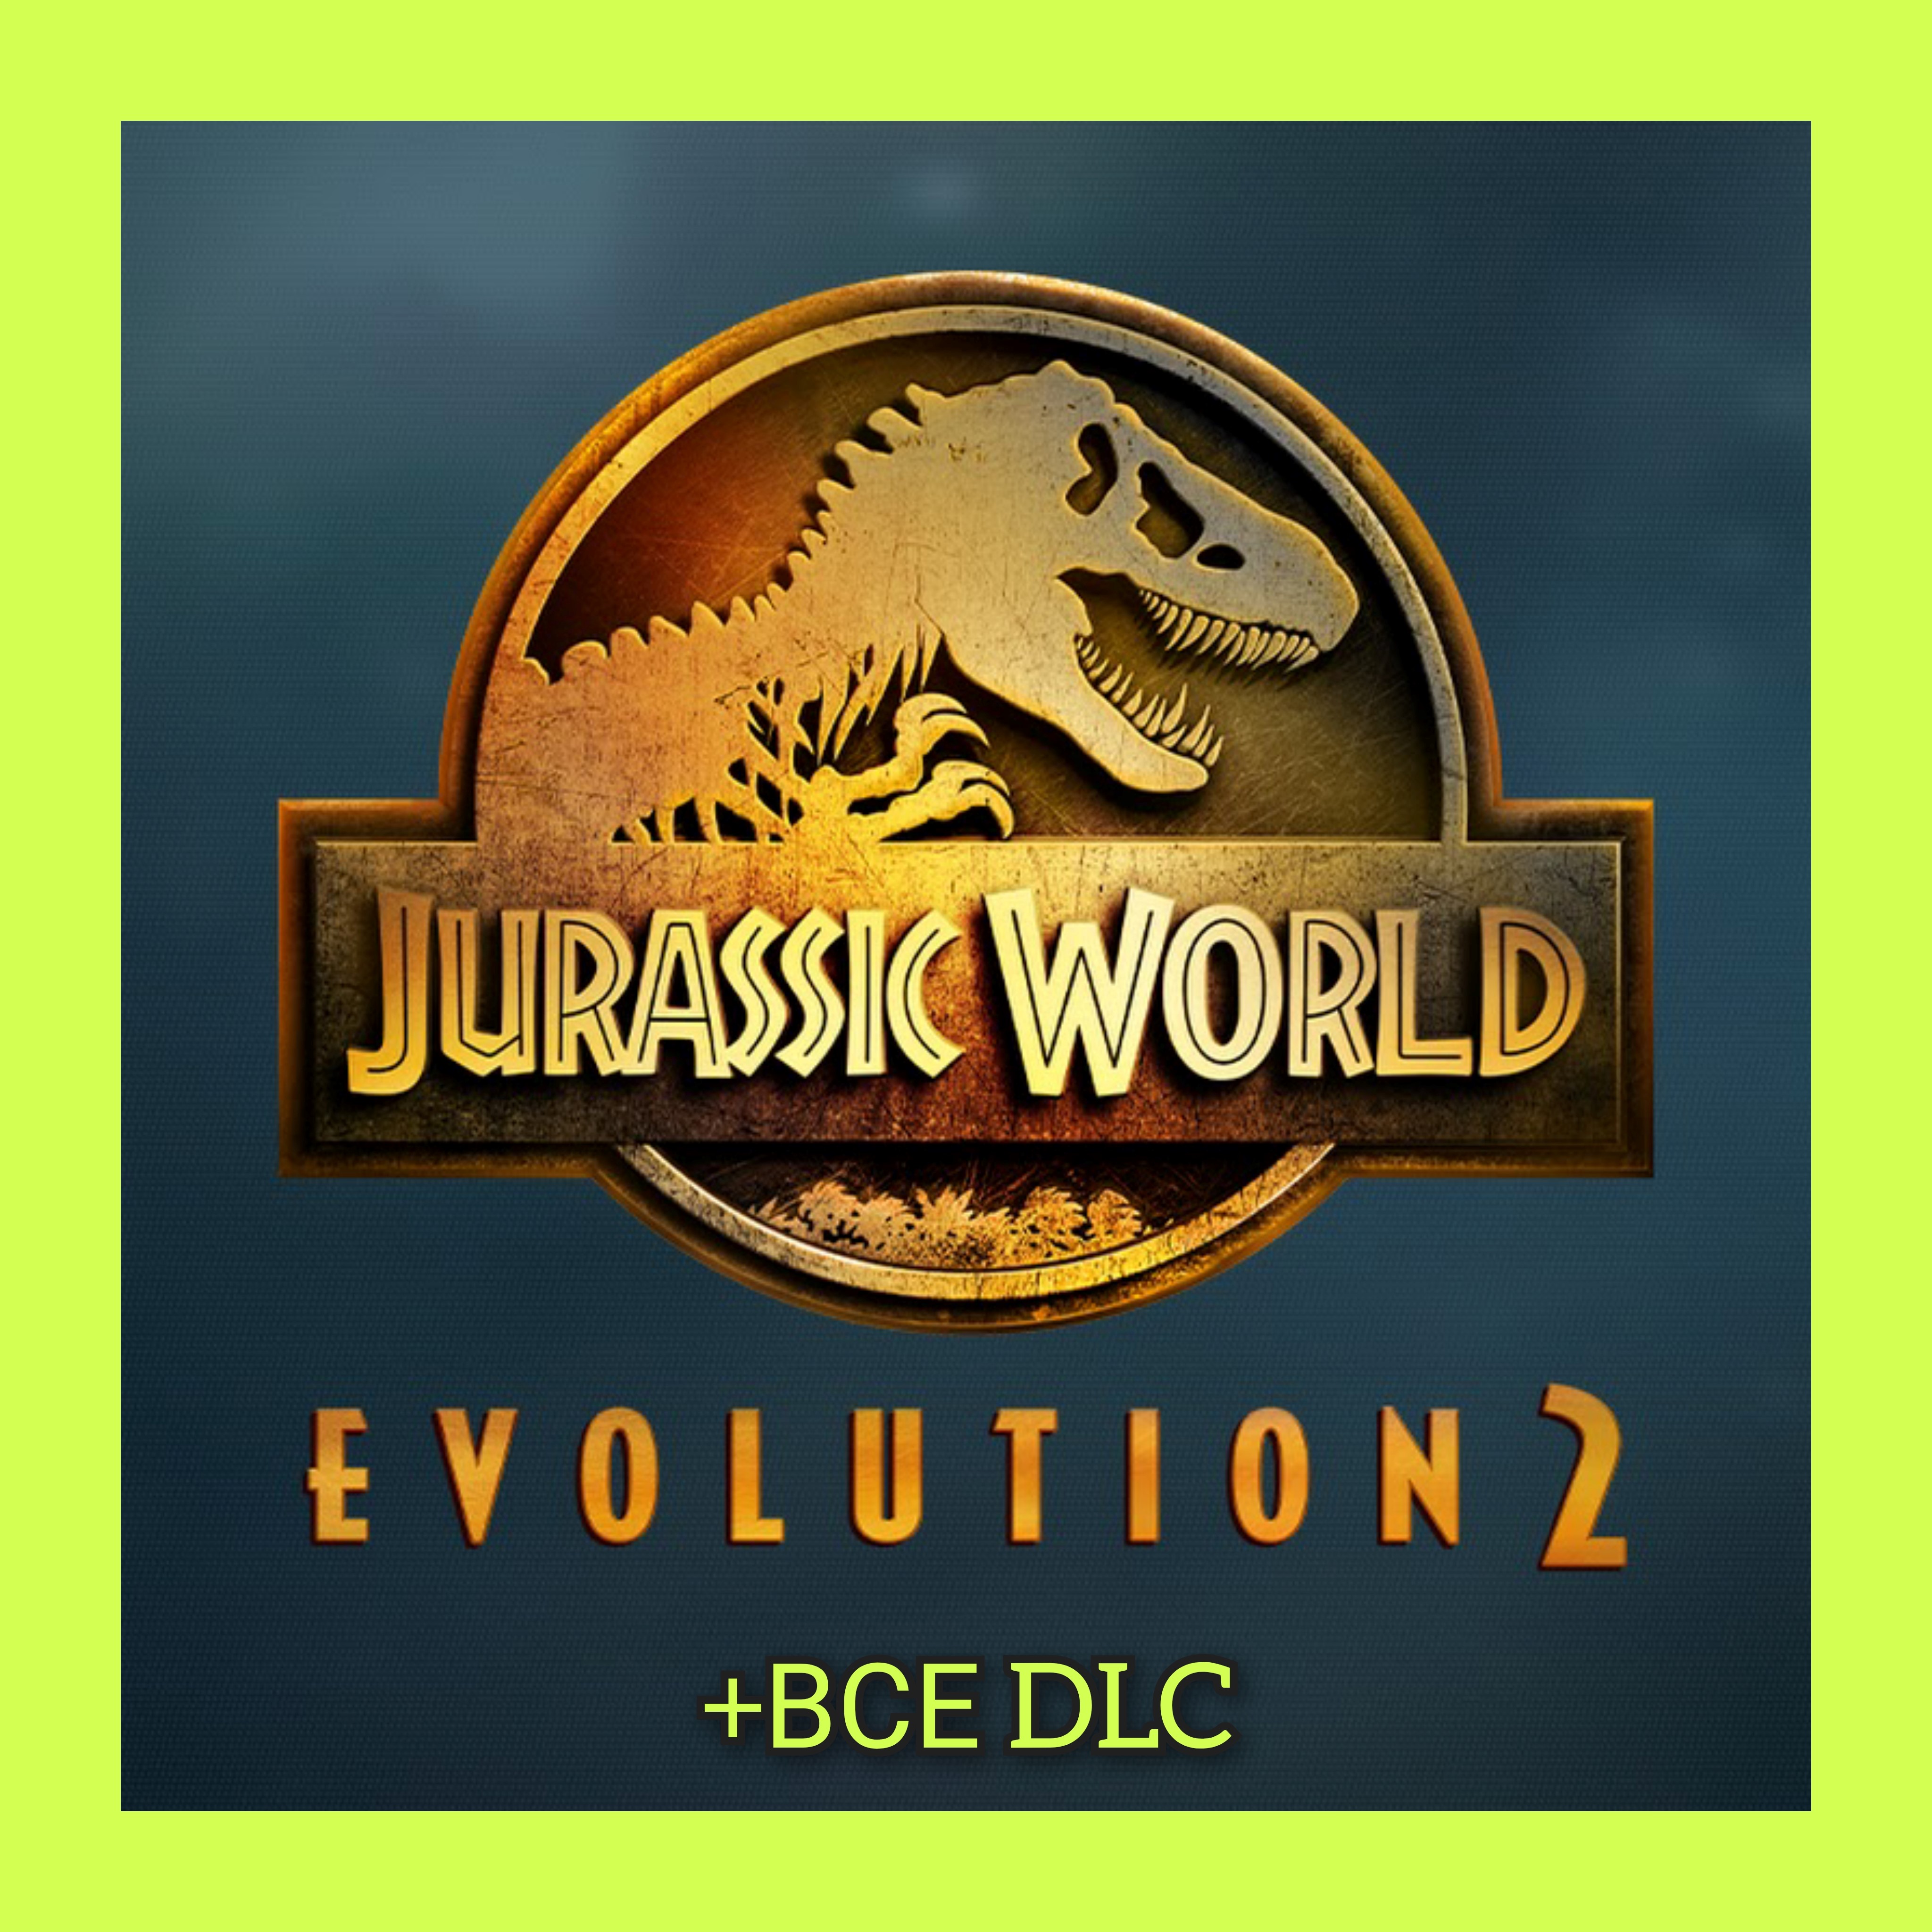 Jurassic World Evolution 2 + ВСЕ DLC / STEAM АККАУНТ